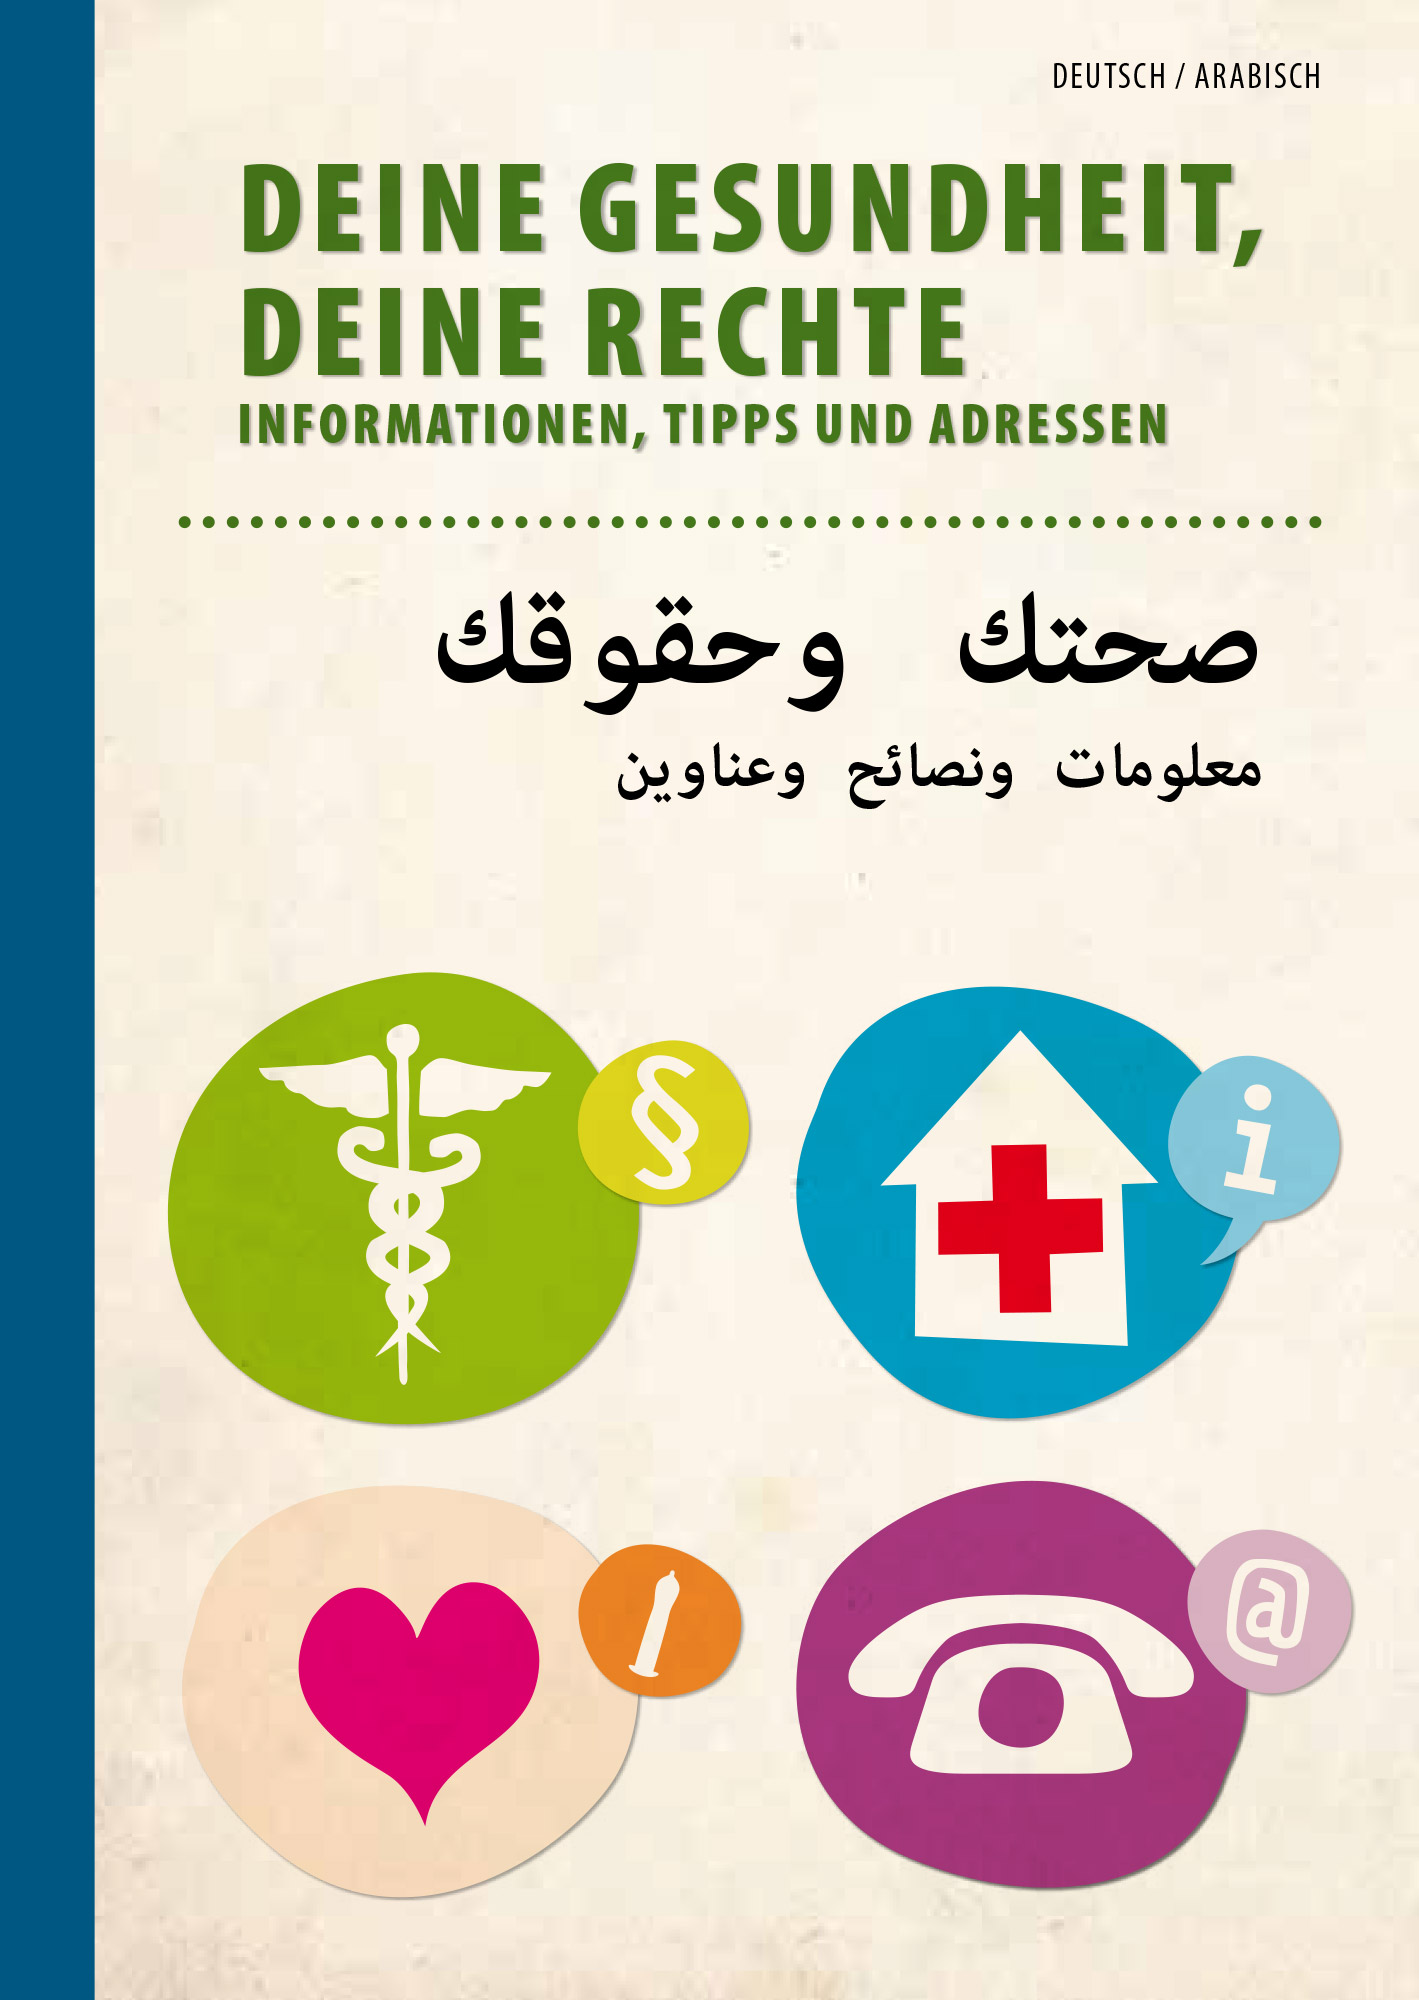 Titelseite der Broschüre "Deine Gesundheit, deine Rechte"